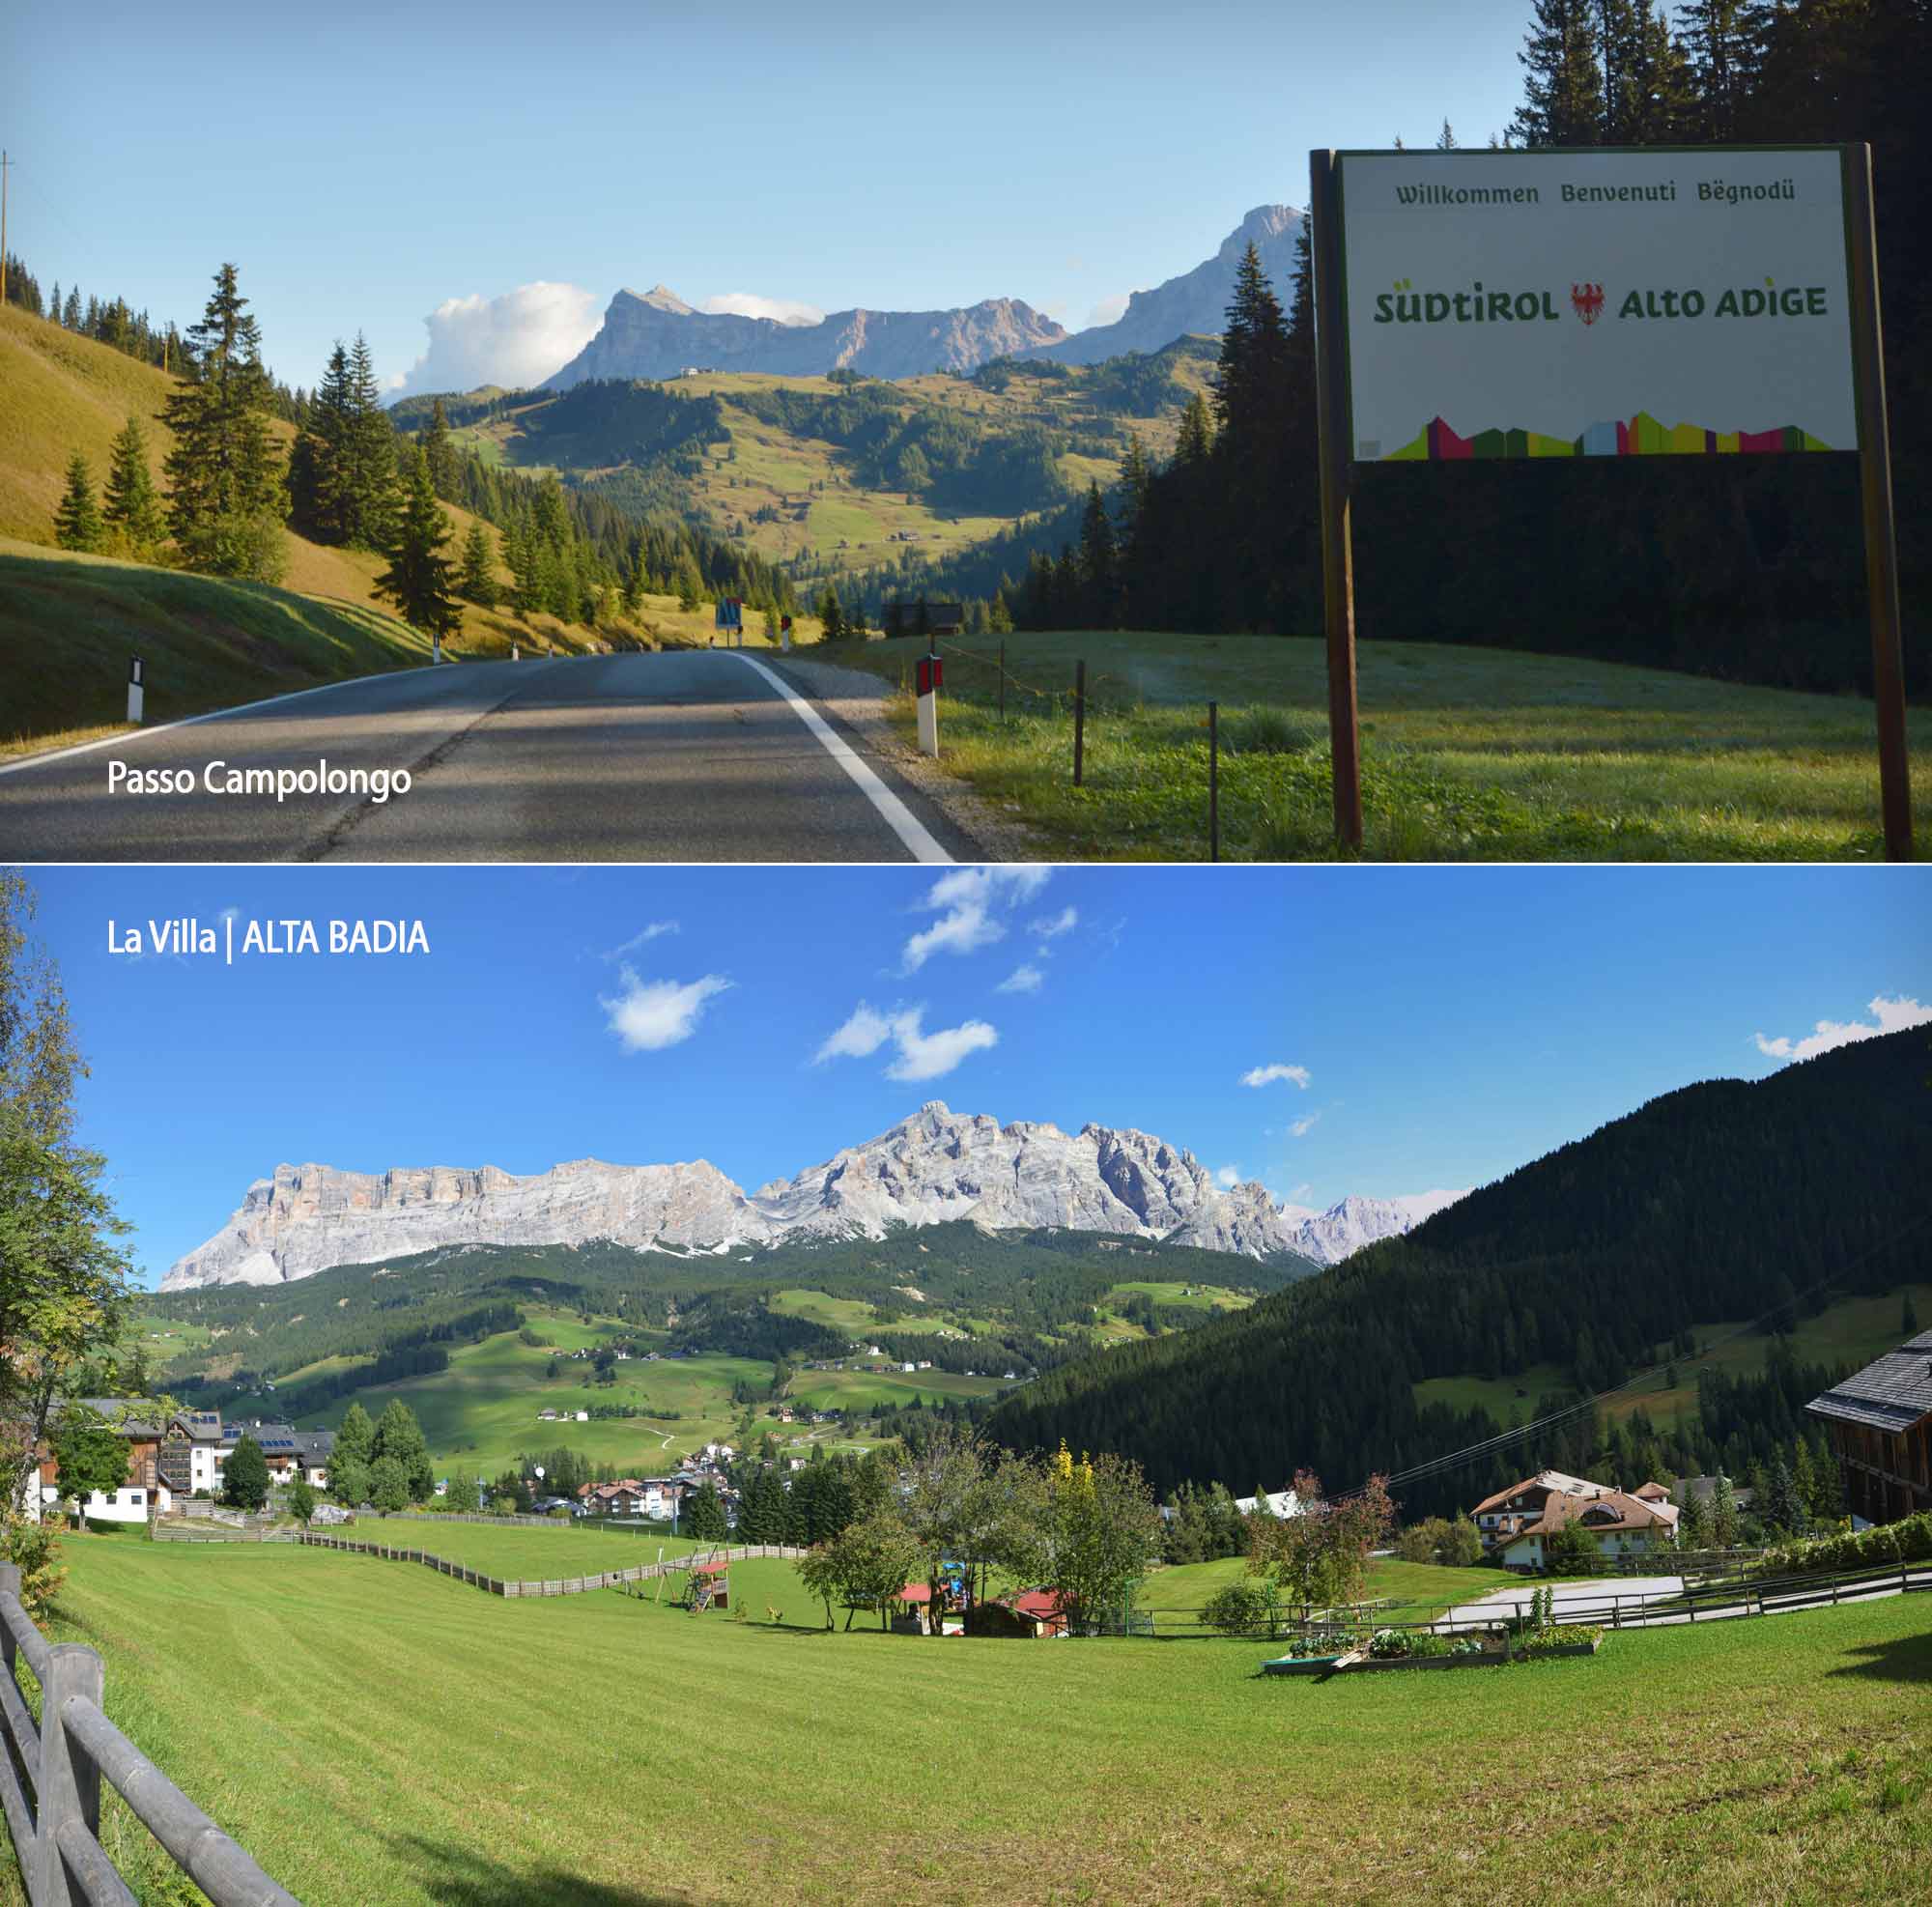 Benvenuti a Ciasa Ro Blancia Appartamenti in affitto Dolomiti Sudtirol Alto Adige